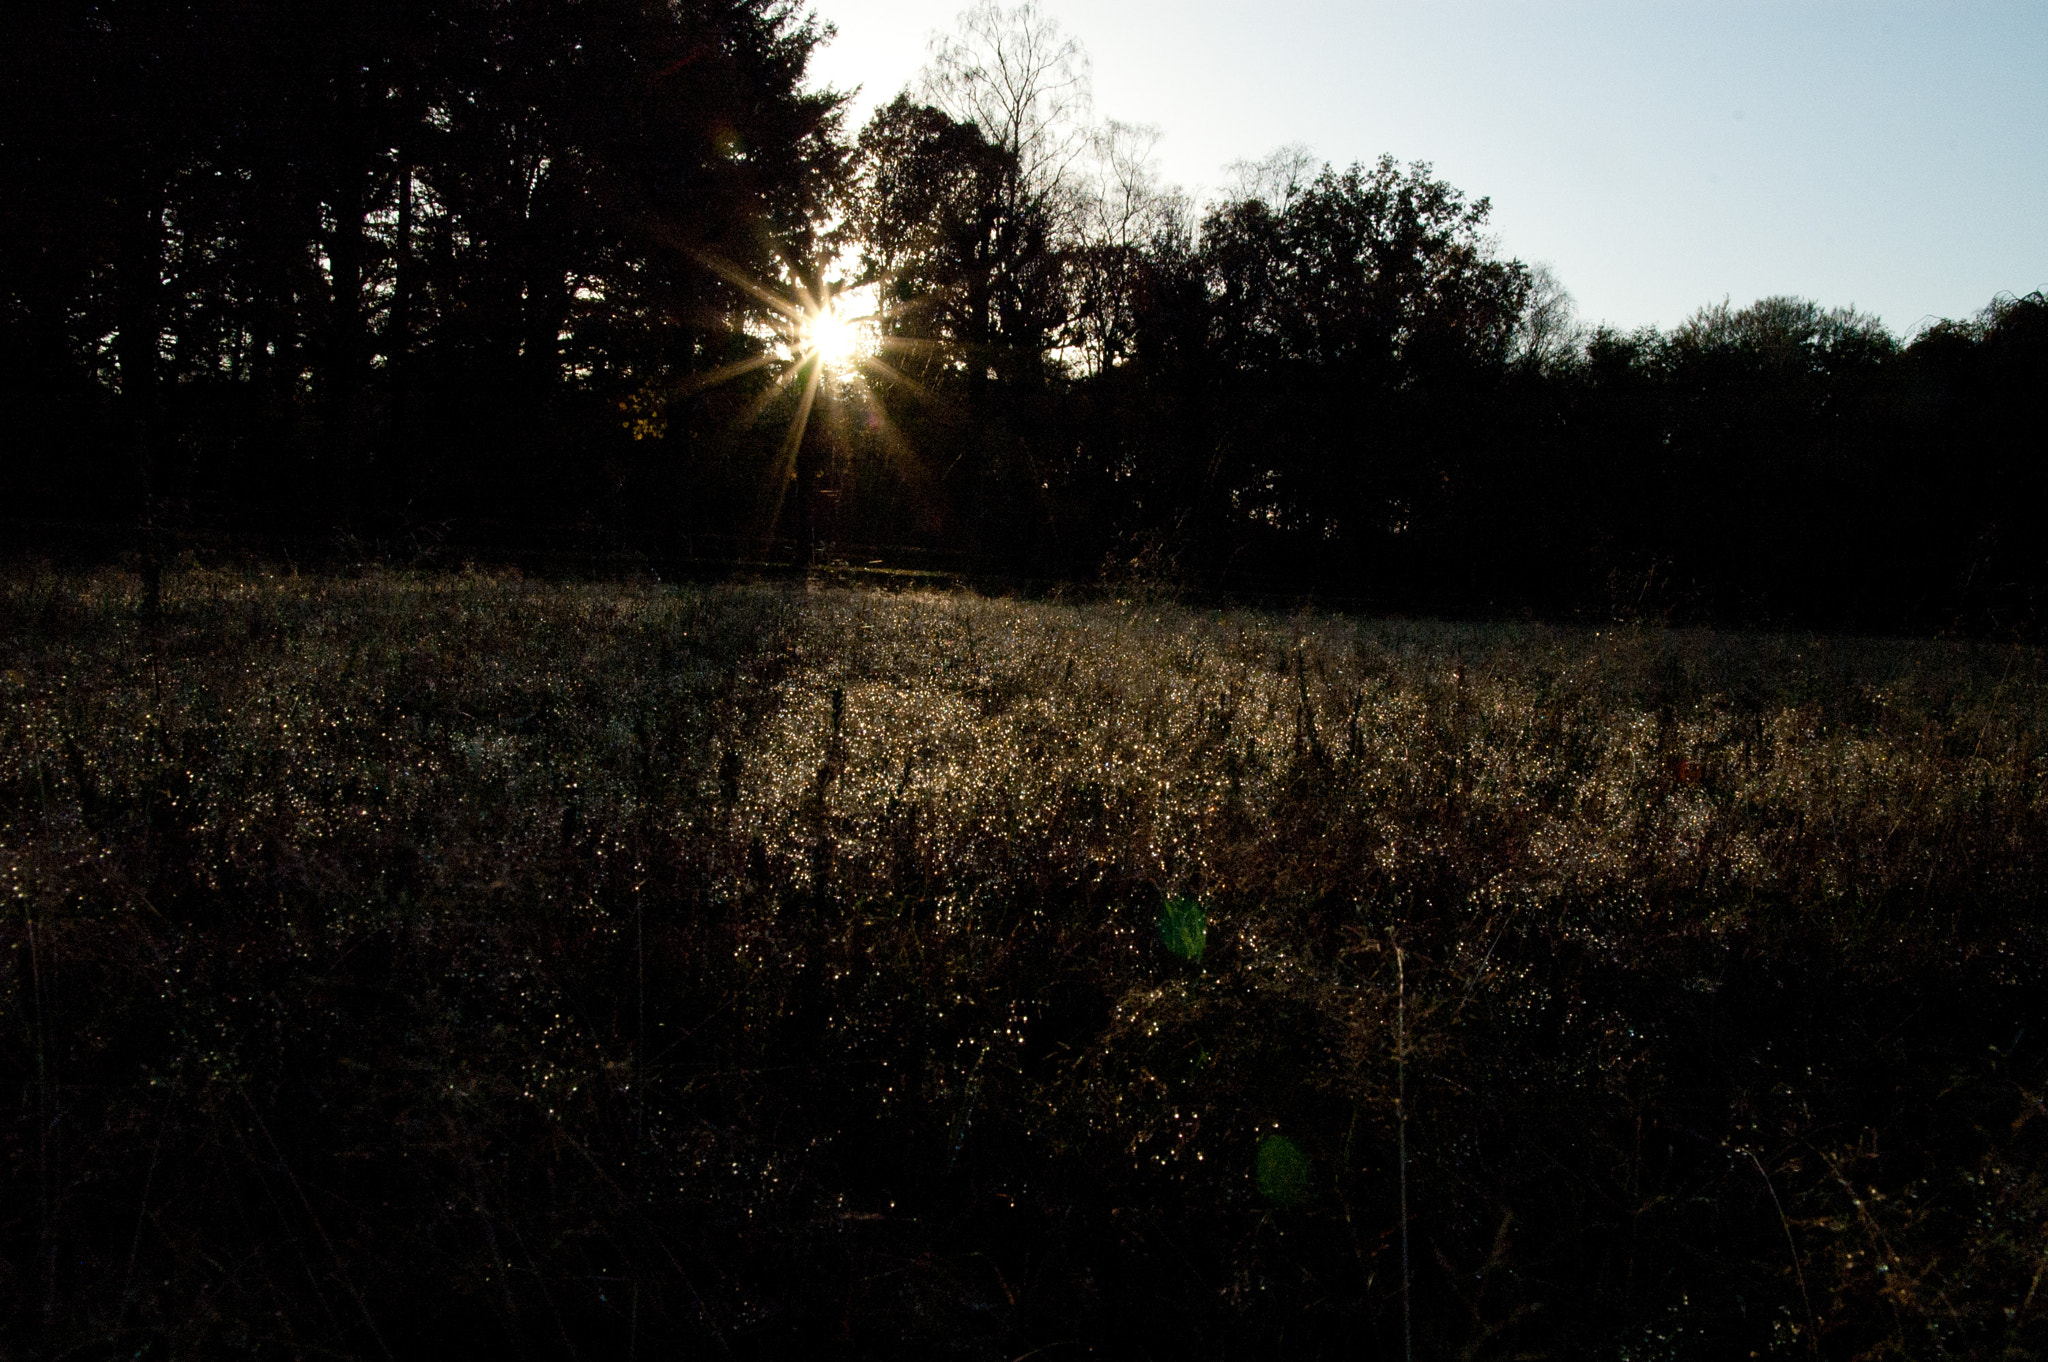 Nikon D70 sample photo. Evening sun photography